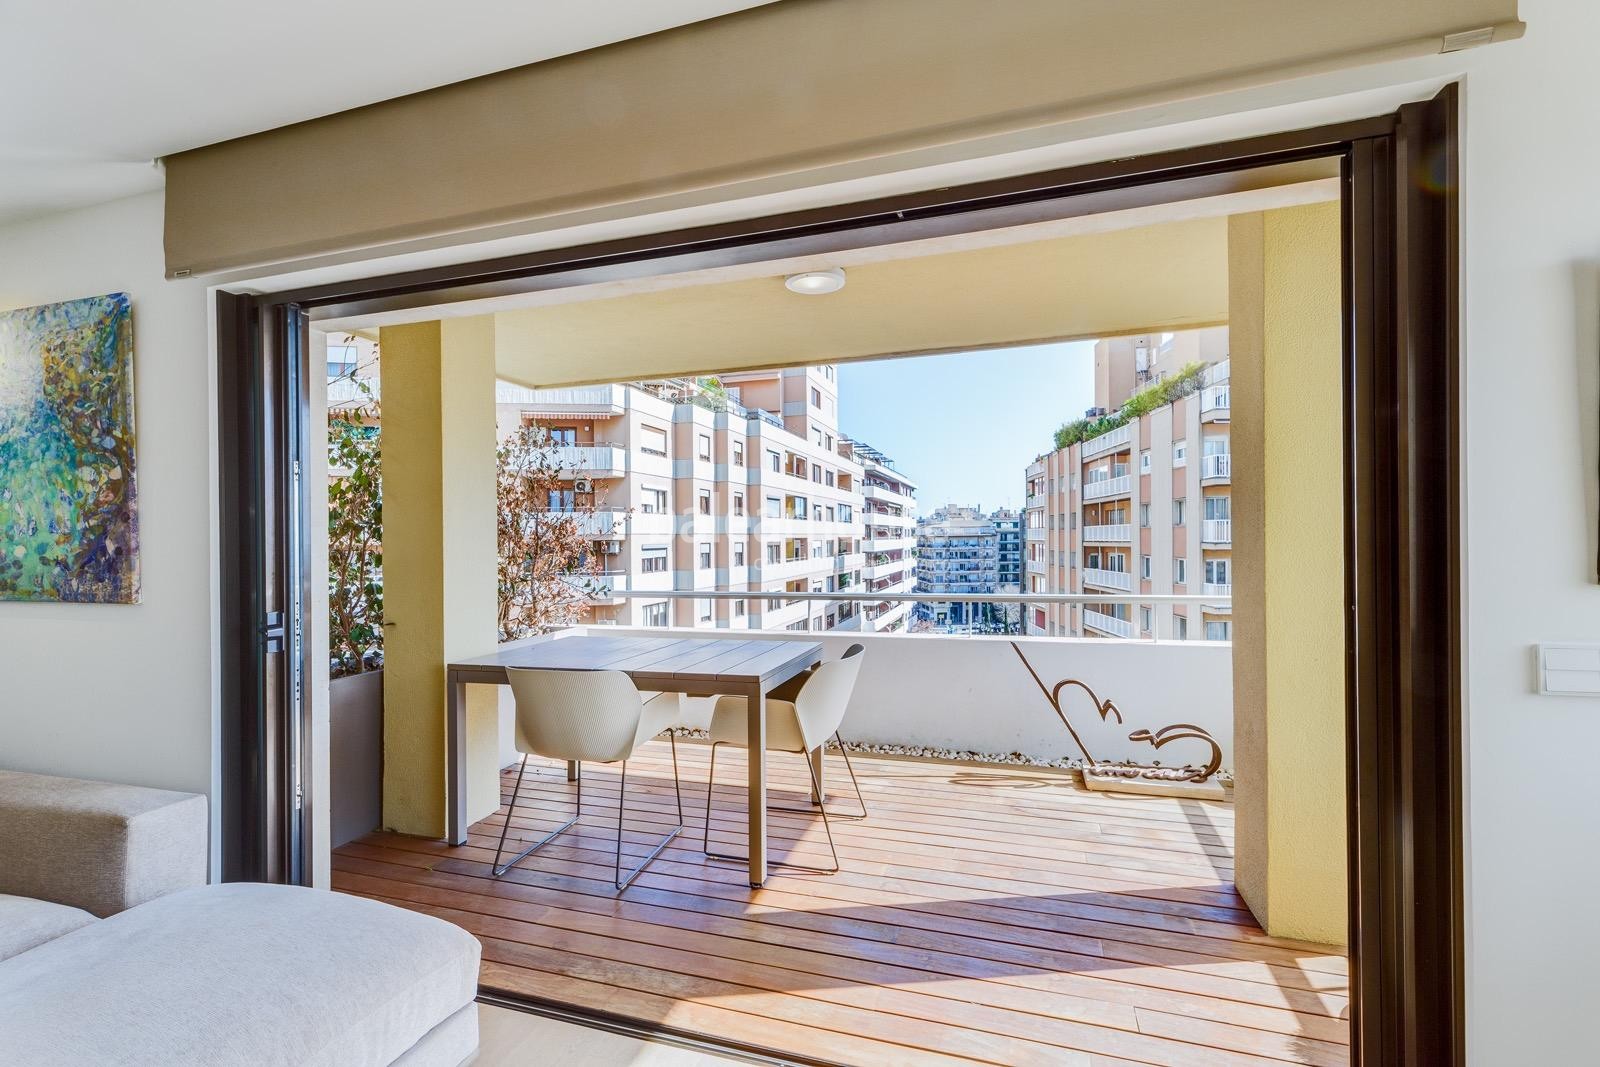 Magnífico gran piso reformado en el centro de Palma con un diseño actual y de altas calidades.